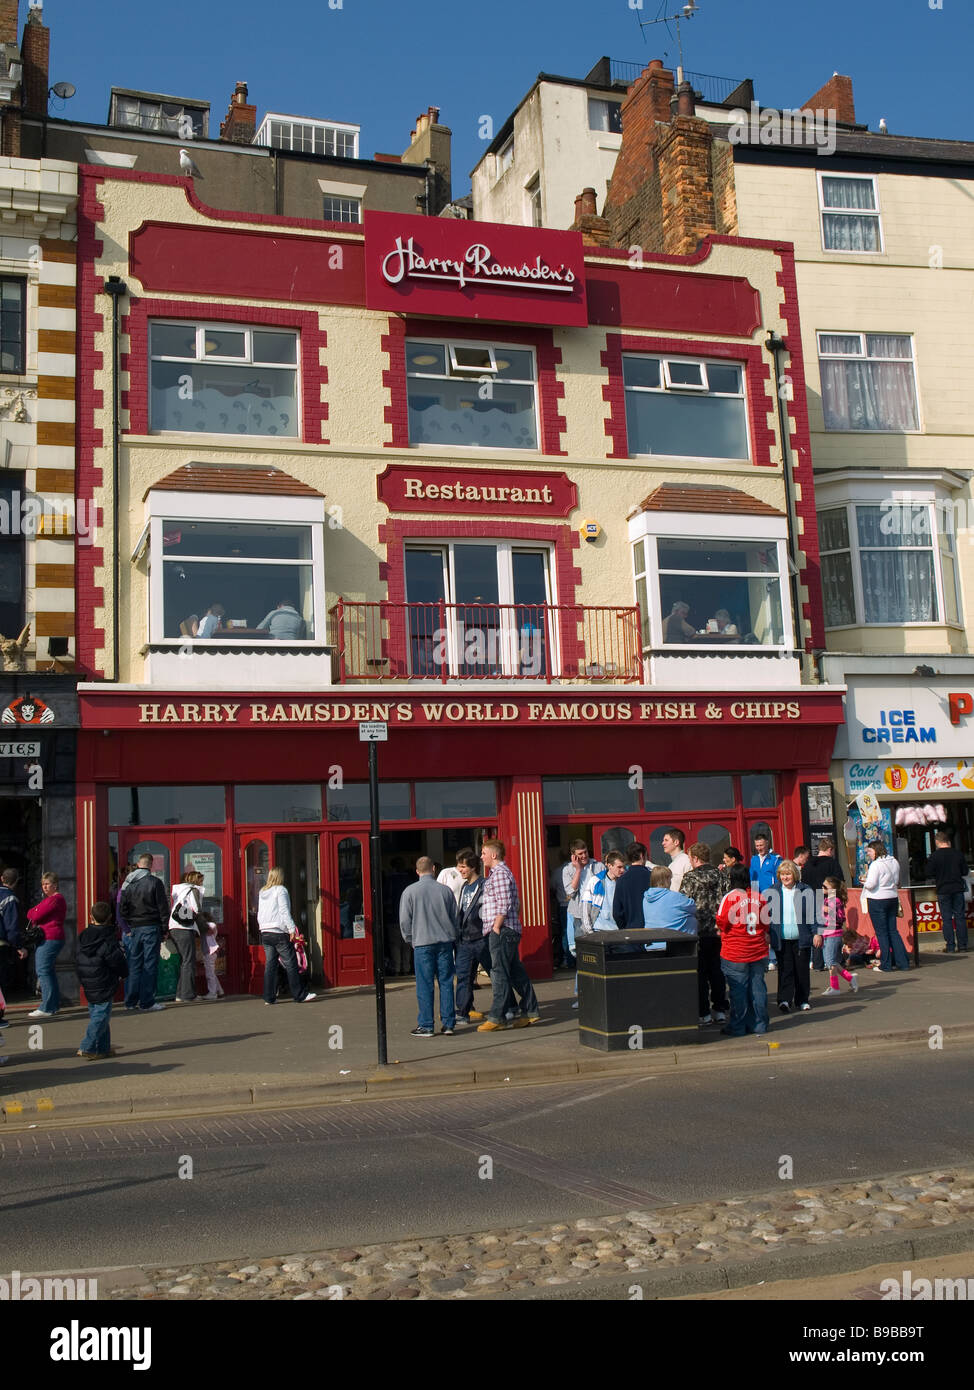 Eine Franchise von 'Harry Ramsdens' berühmten Fish and Chips Shop Scarborough, Großbritannien Stockfoto